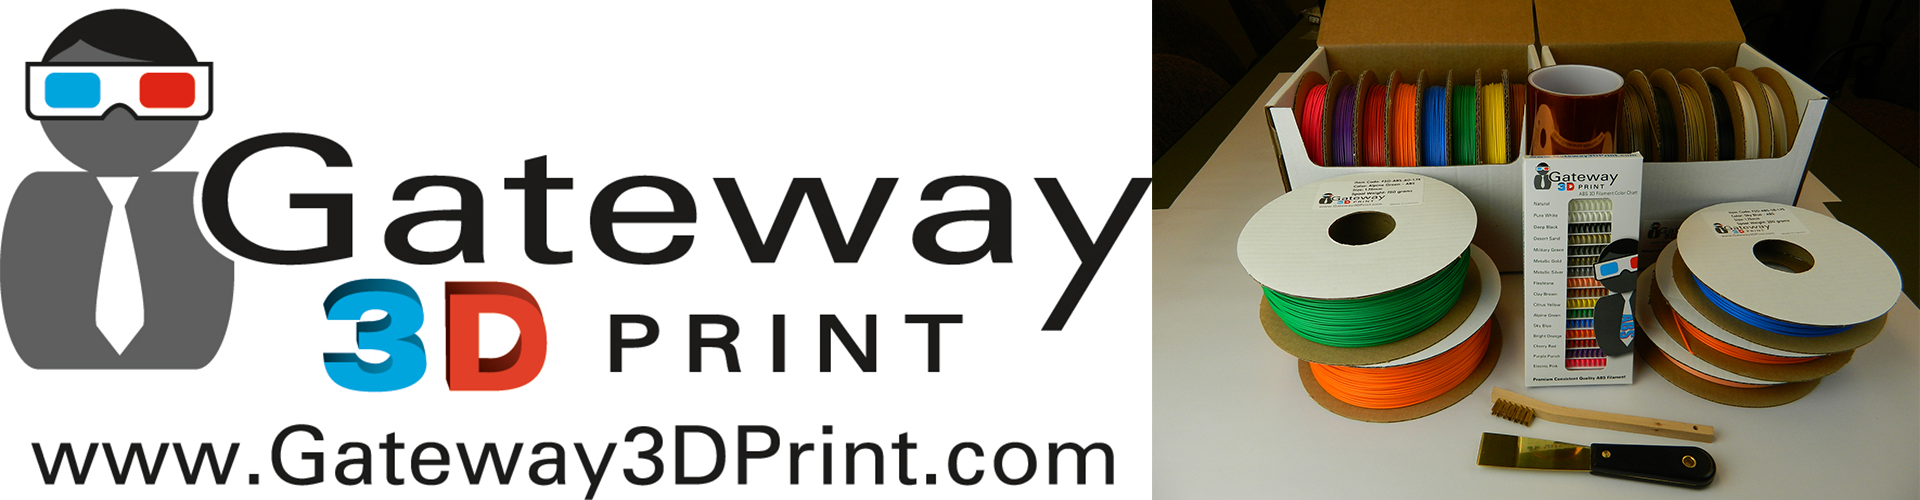 Gateway 3D Print - ABS 3D Filament for 3D Printers